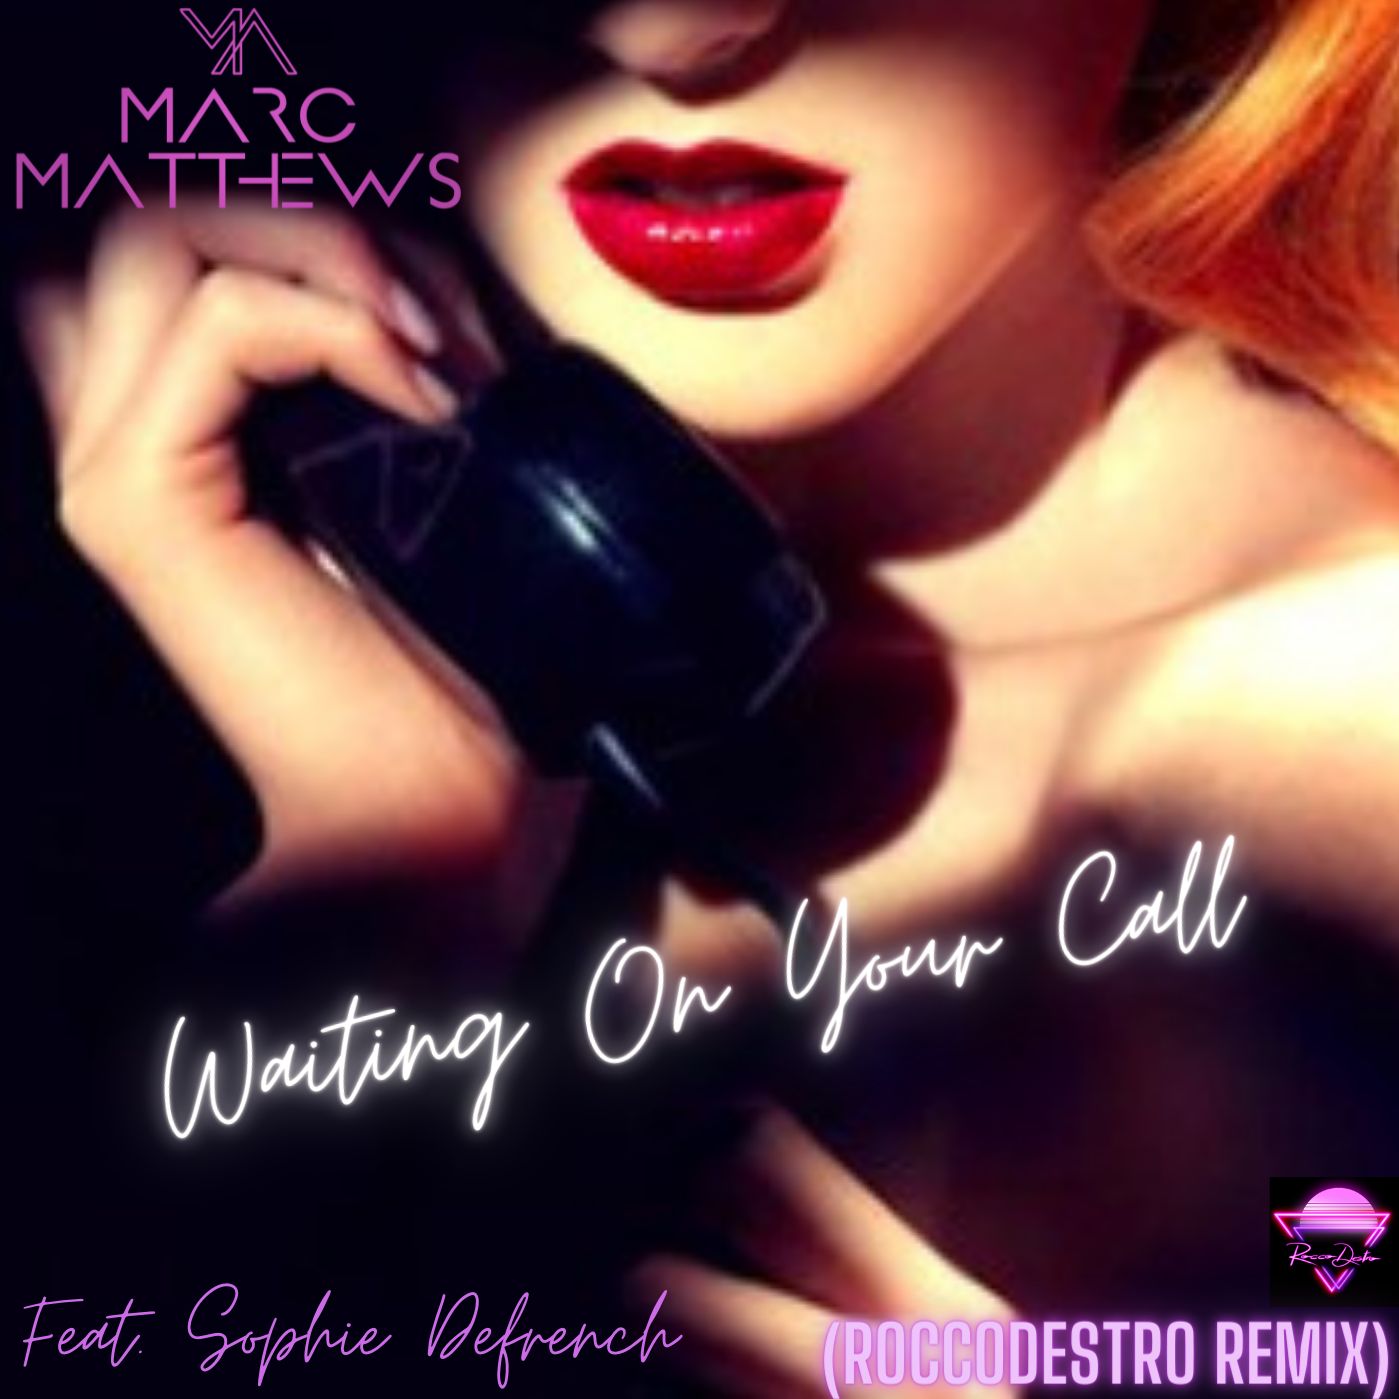 ڈاؤن لوڈ کریں Waiting On Your Call (Rocco Destro Remix)